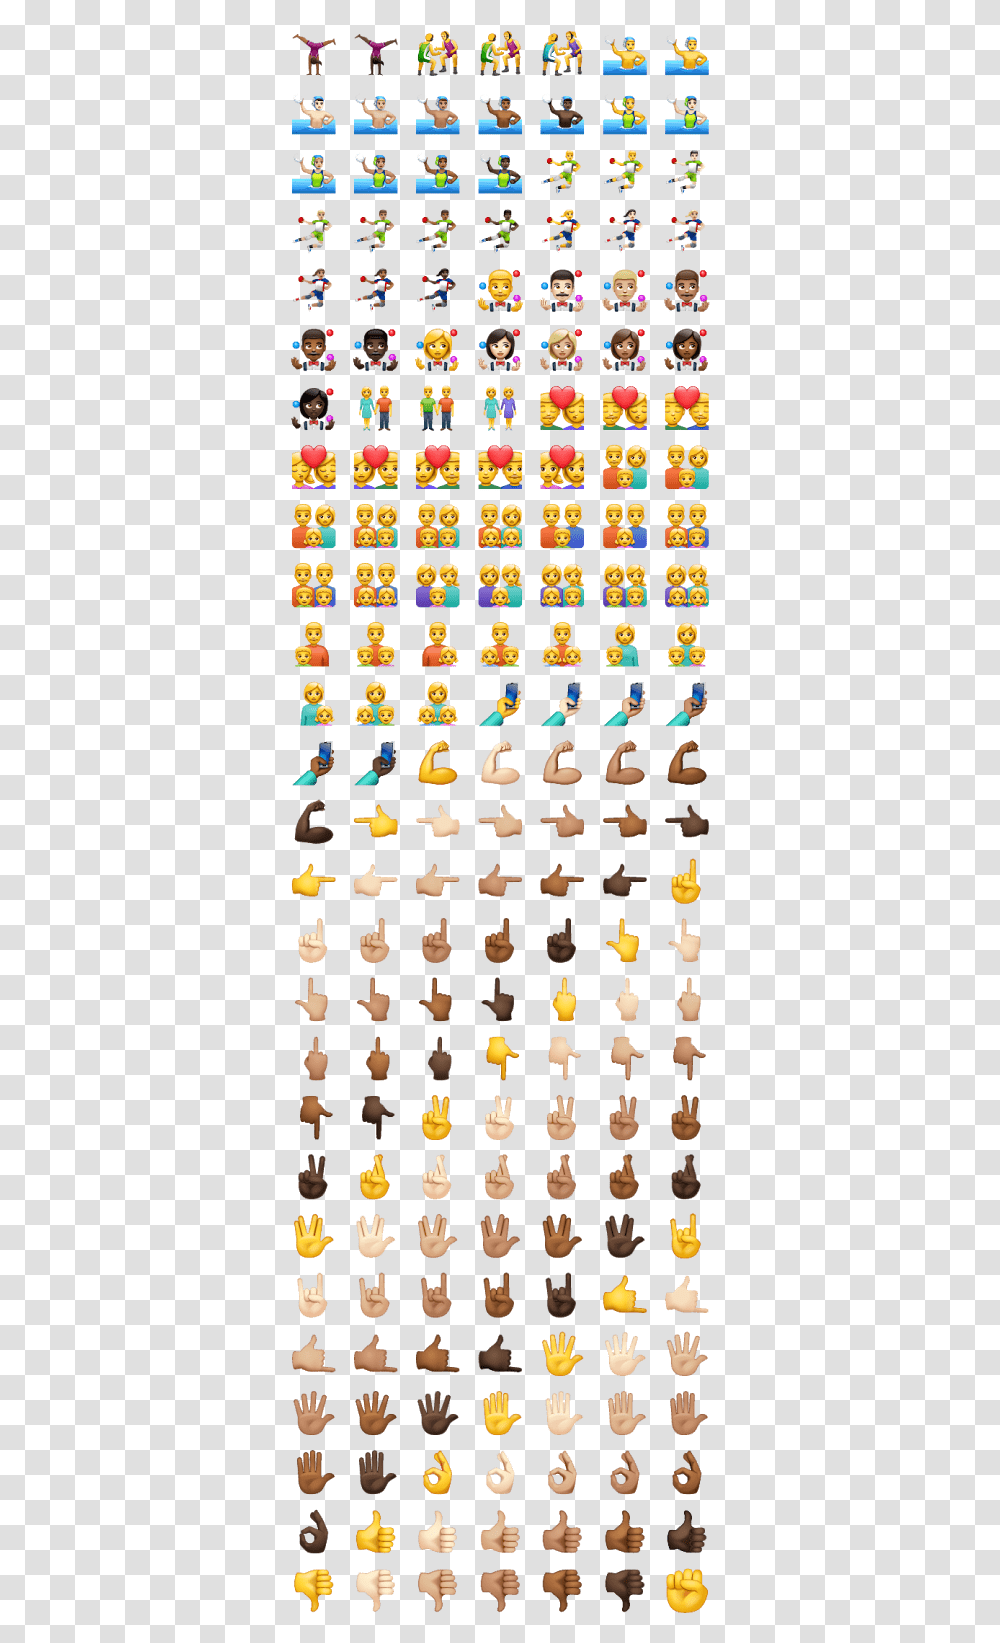 Todos Os Emojis Do Whatsapp Todos Significado Dos Emojis Transparent Png